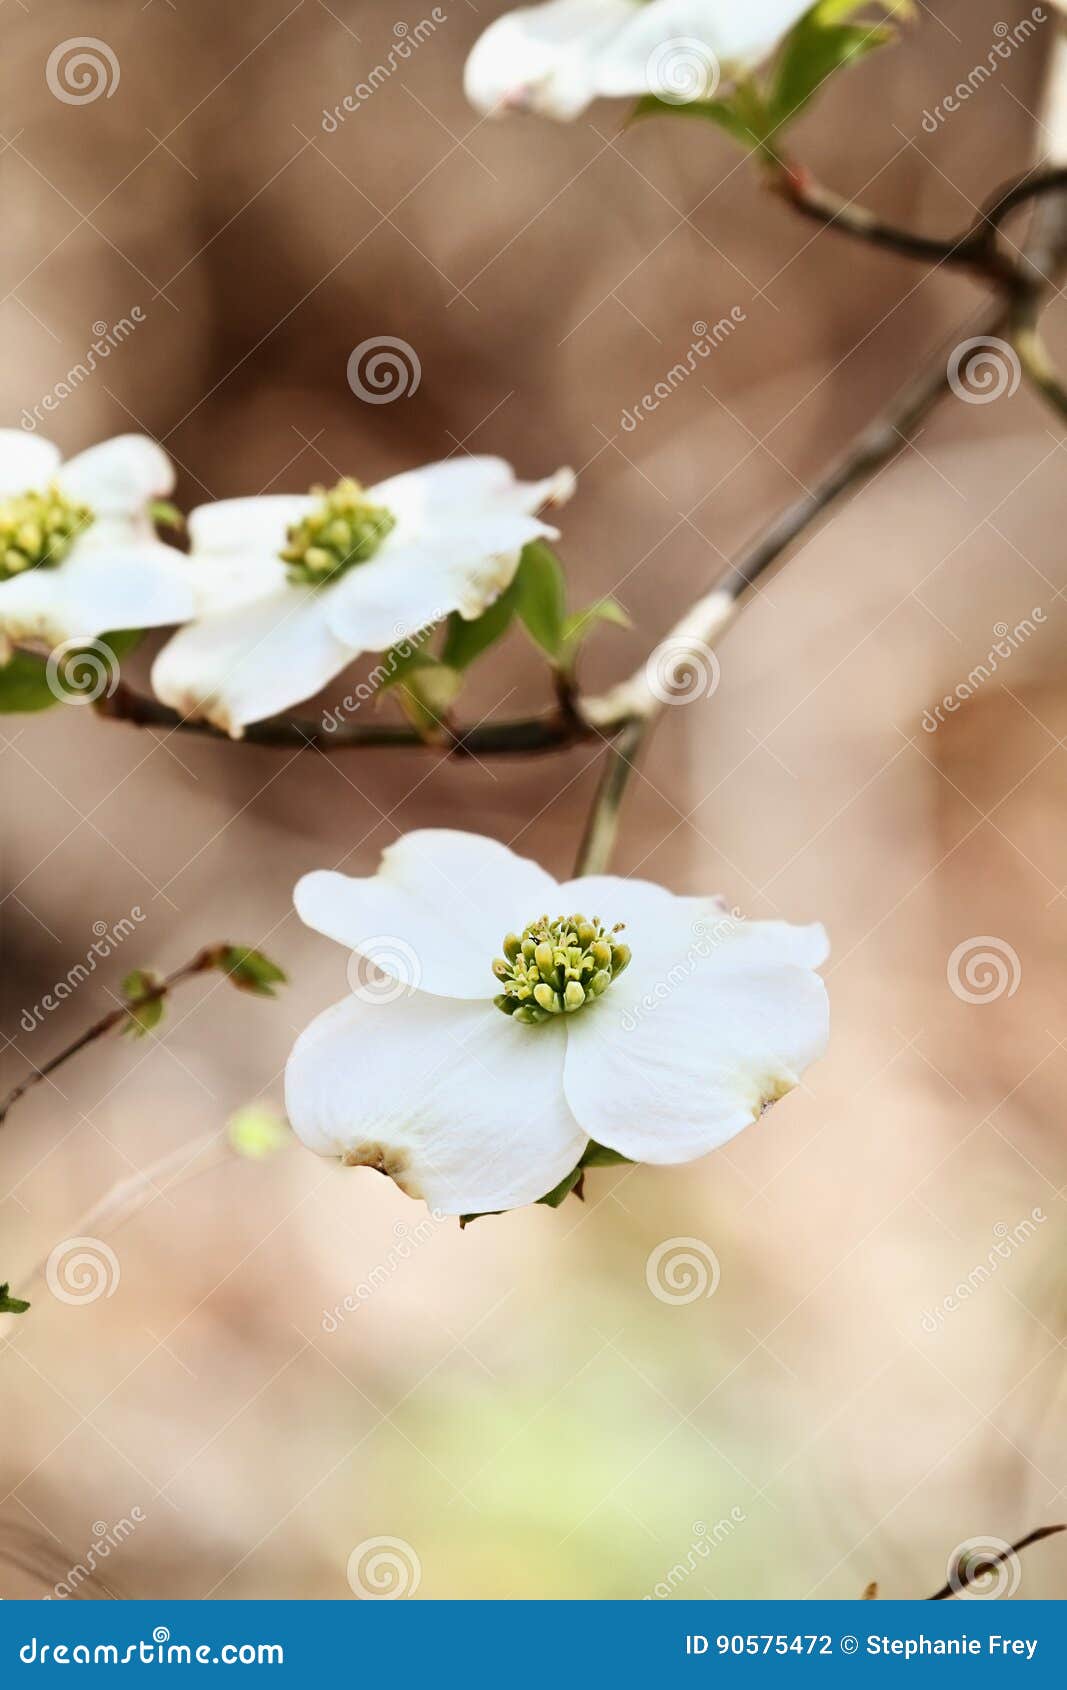 white flowering dogwood tree blossom